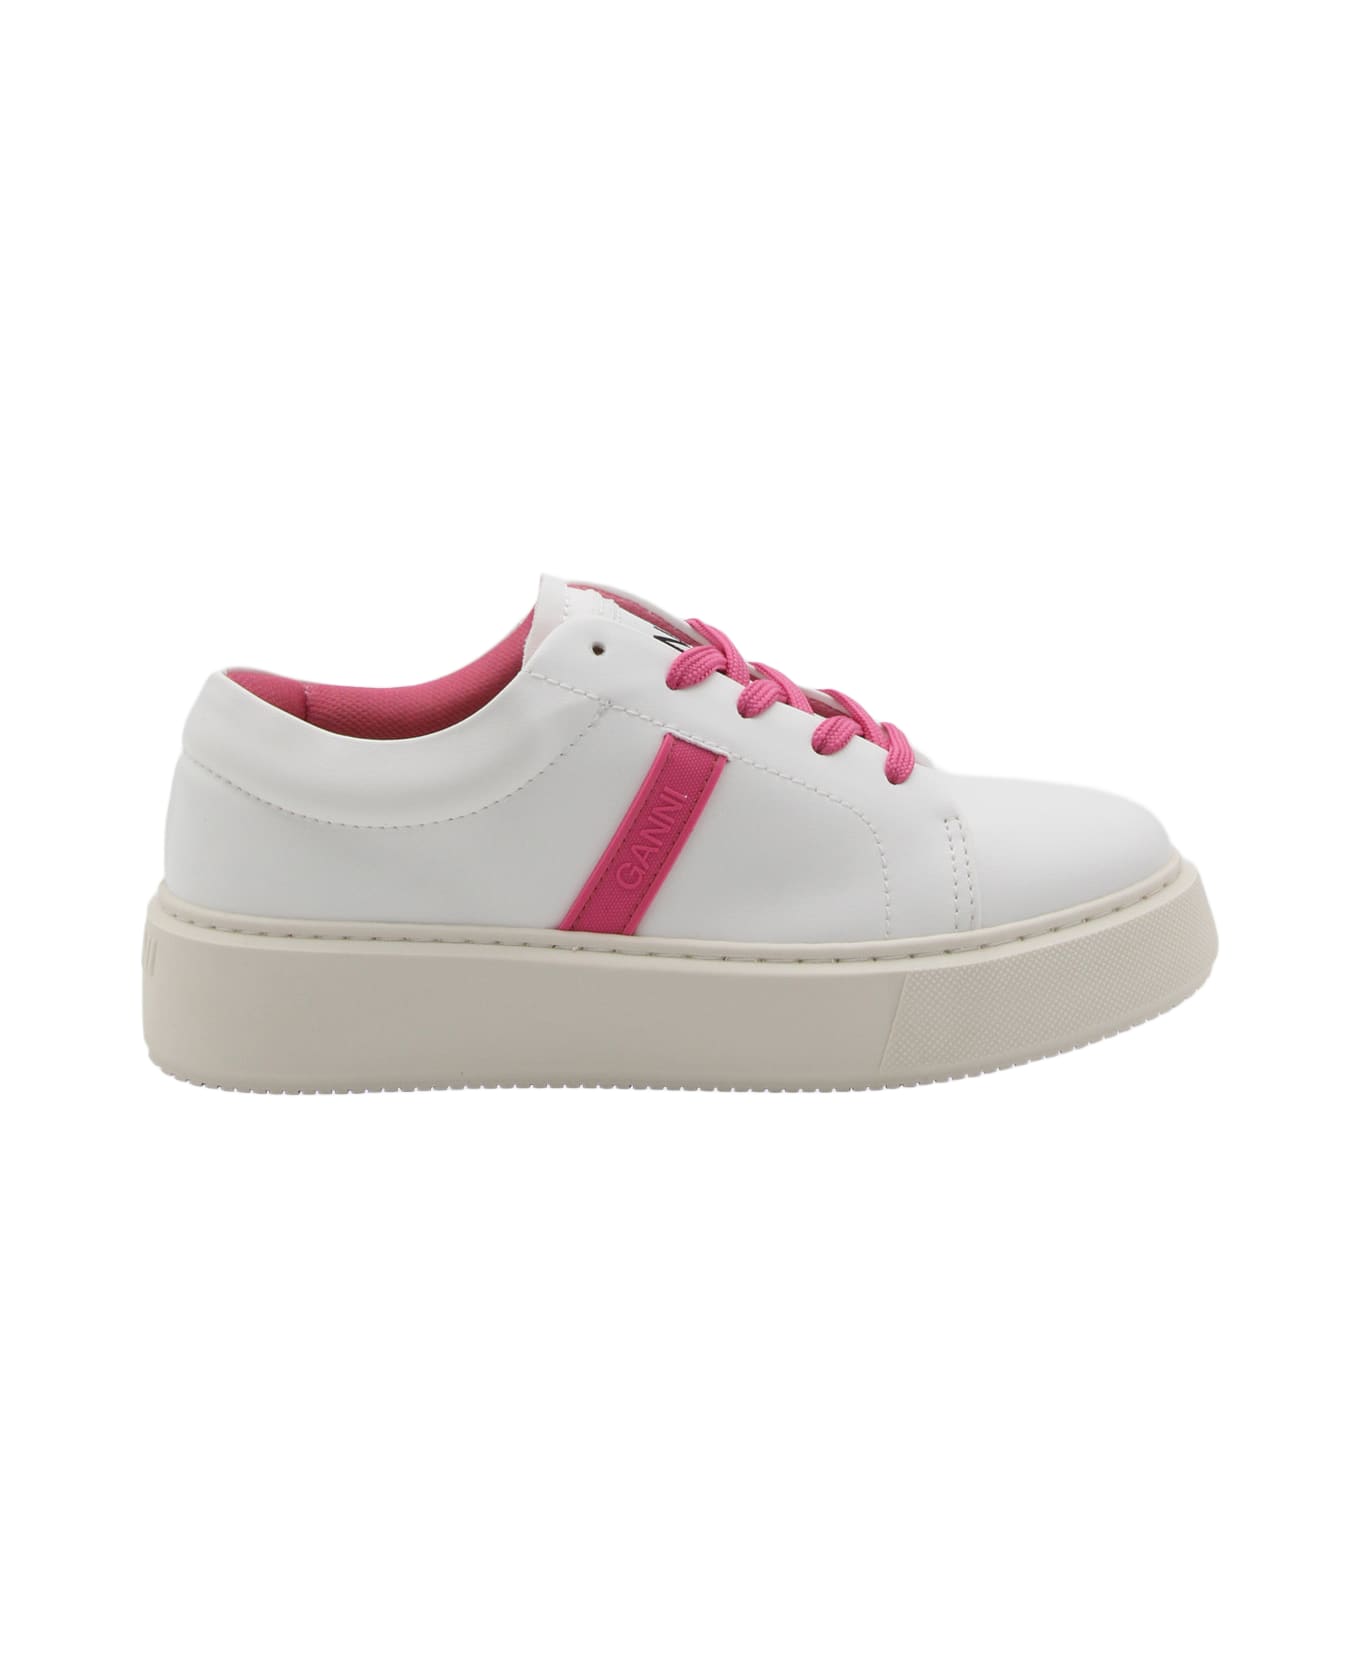 Ganni Shoking Pink Low Top Sneakers - shoking pink